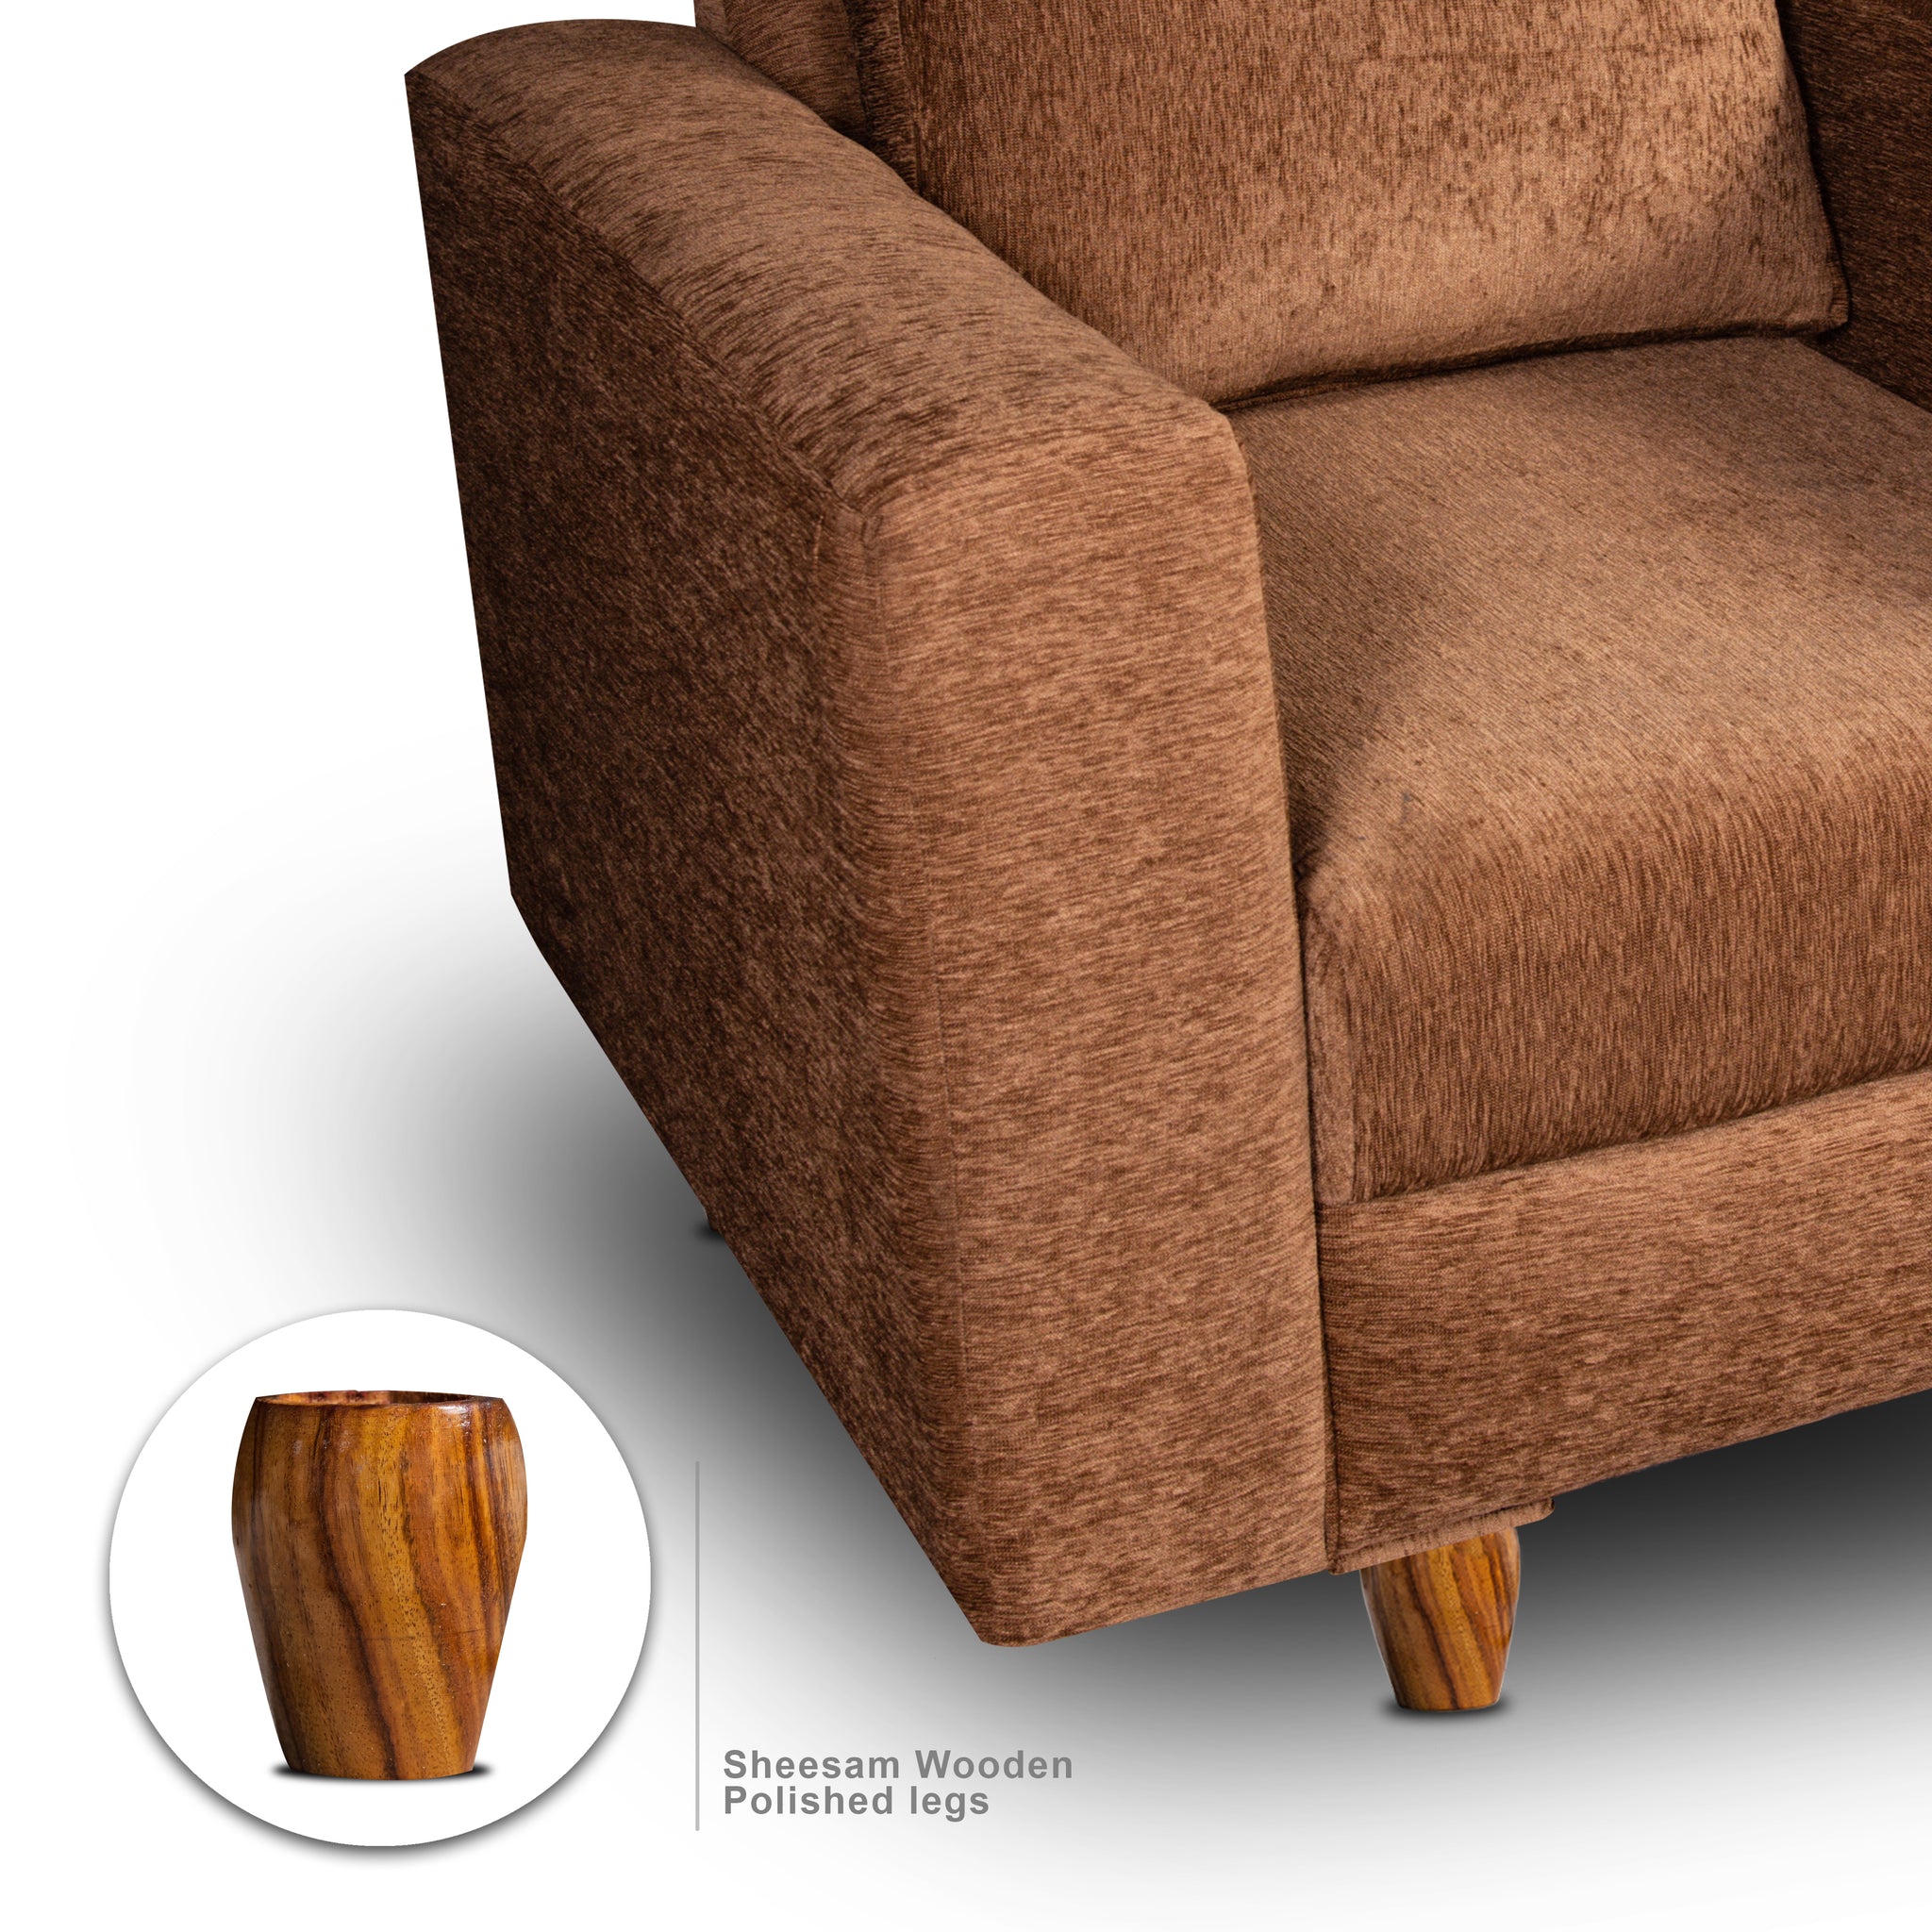 Rio 1 Seater Sofa, Chenille Molfino Fabric (Finish Color - Beige)